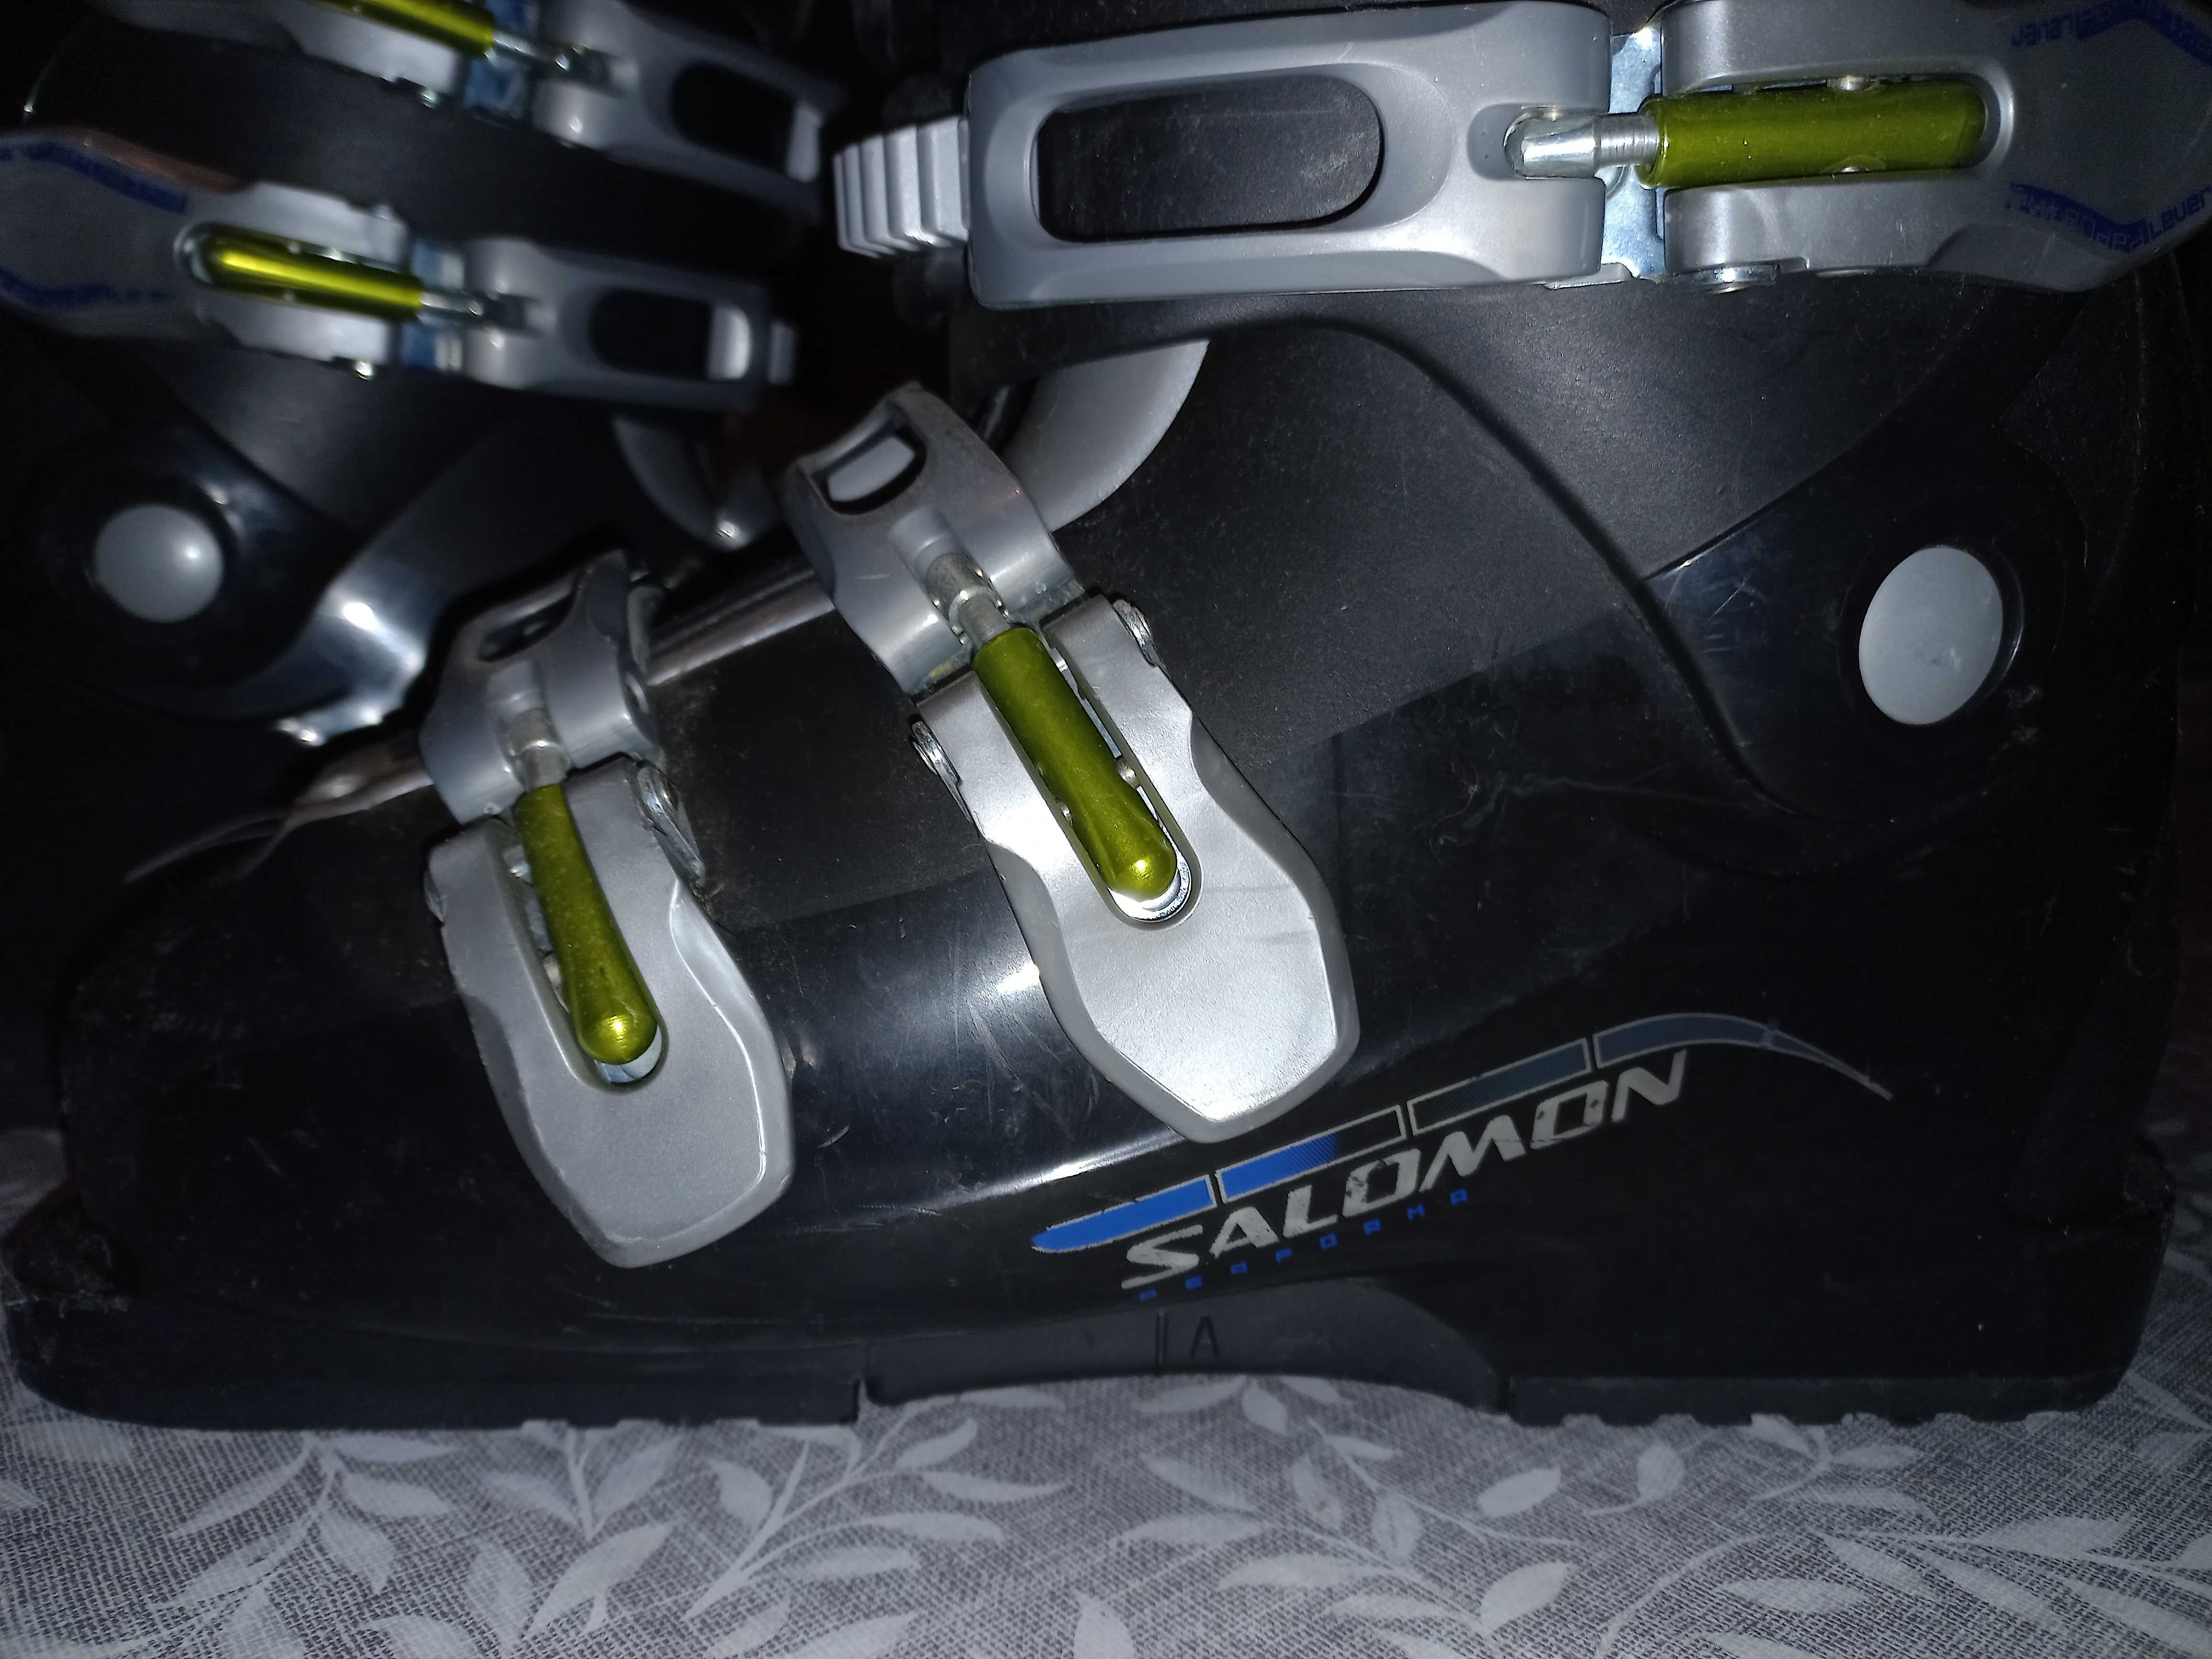 Botas de esqui (ski) Salomon Performa 4.0 tamanho 26,5 (42)